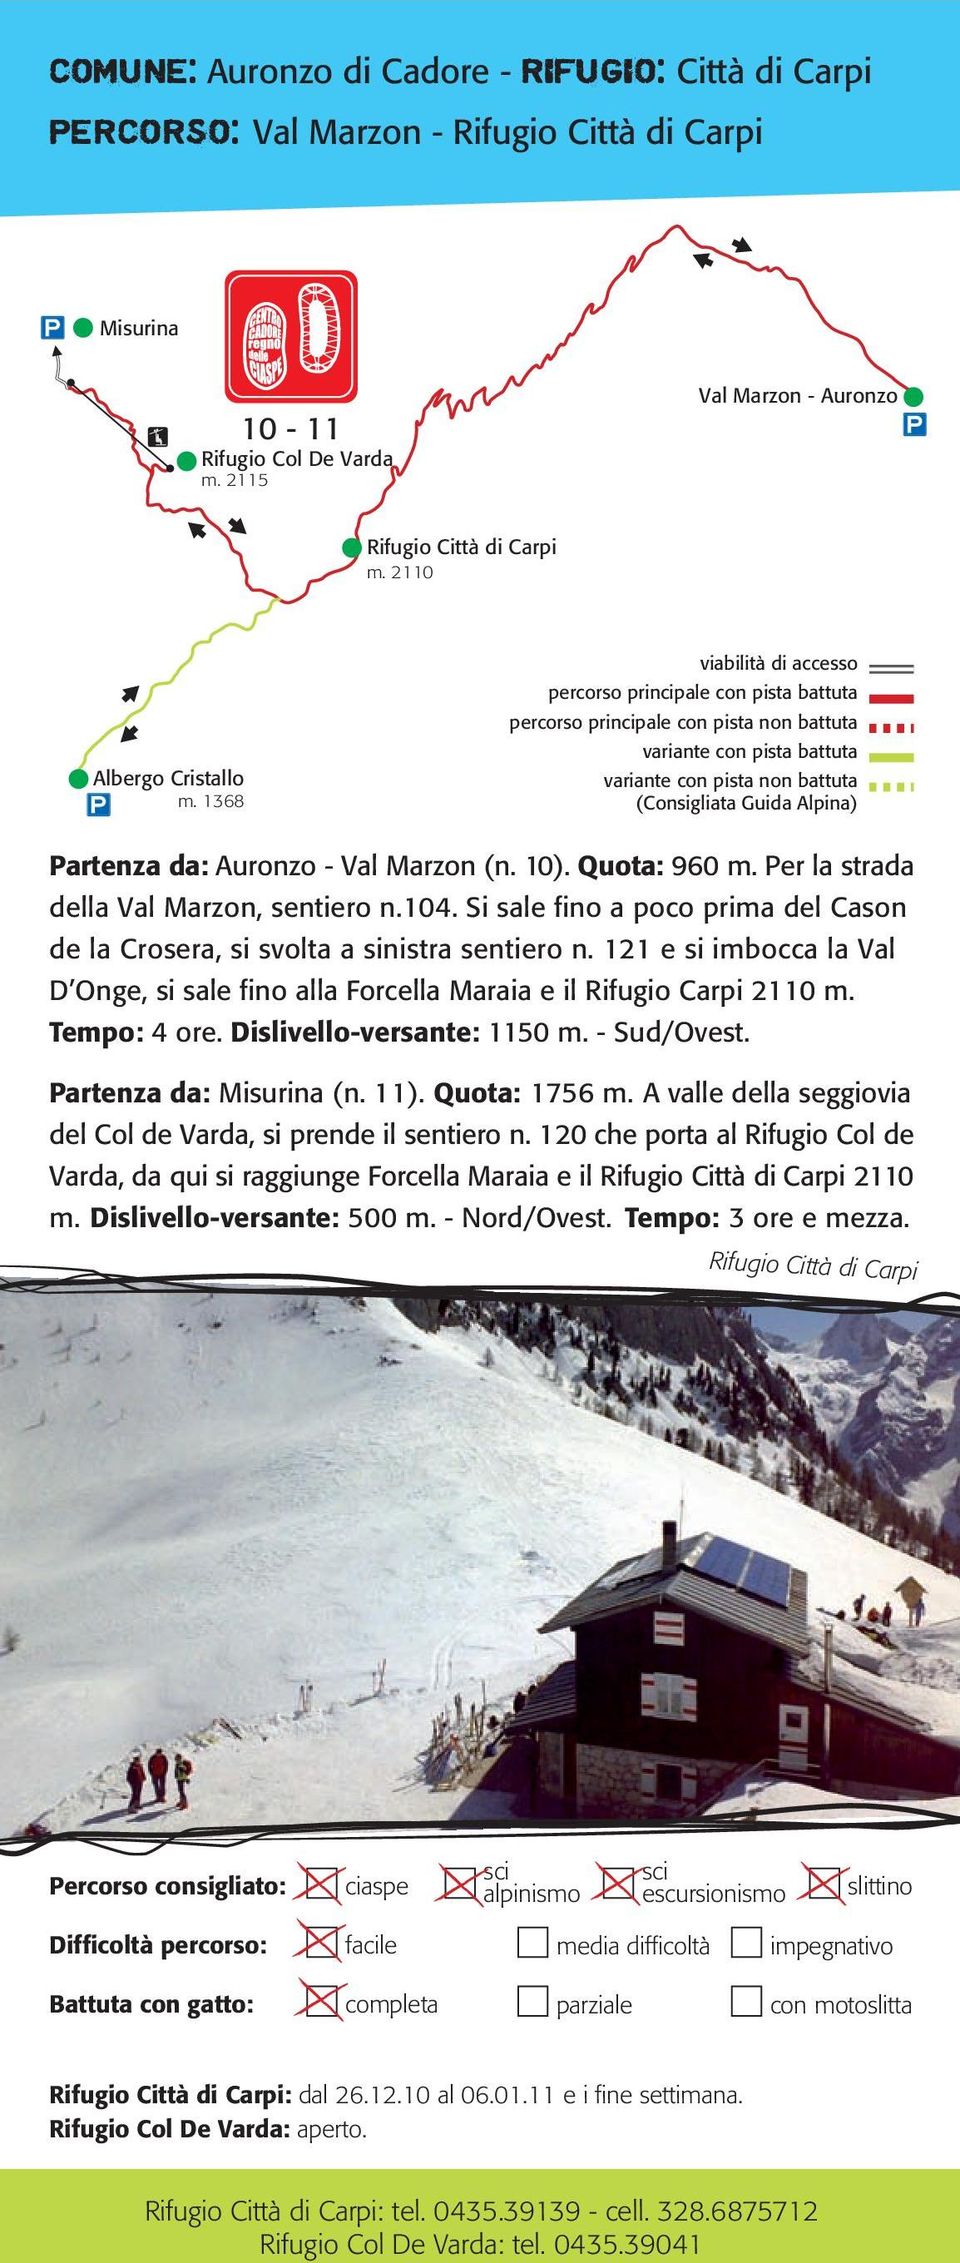 Si sale fino a poco prima del Cason de la Crosera, si svolta a sinistra sentiero n. 121 e si imbocca la Val D Onge, si sale fino alla Forcella Maraia e il Rifugio Carpi 2110 m. Tempo: 4 ore.